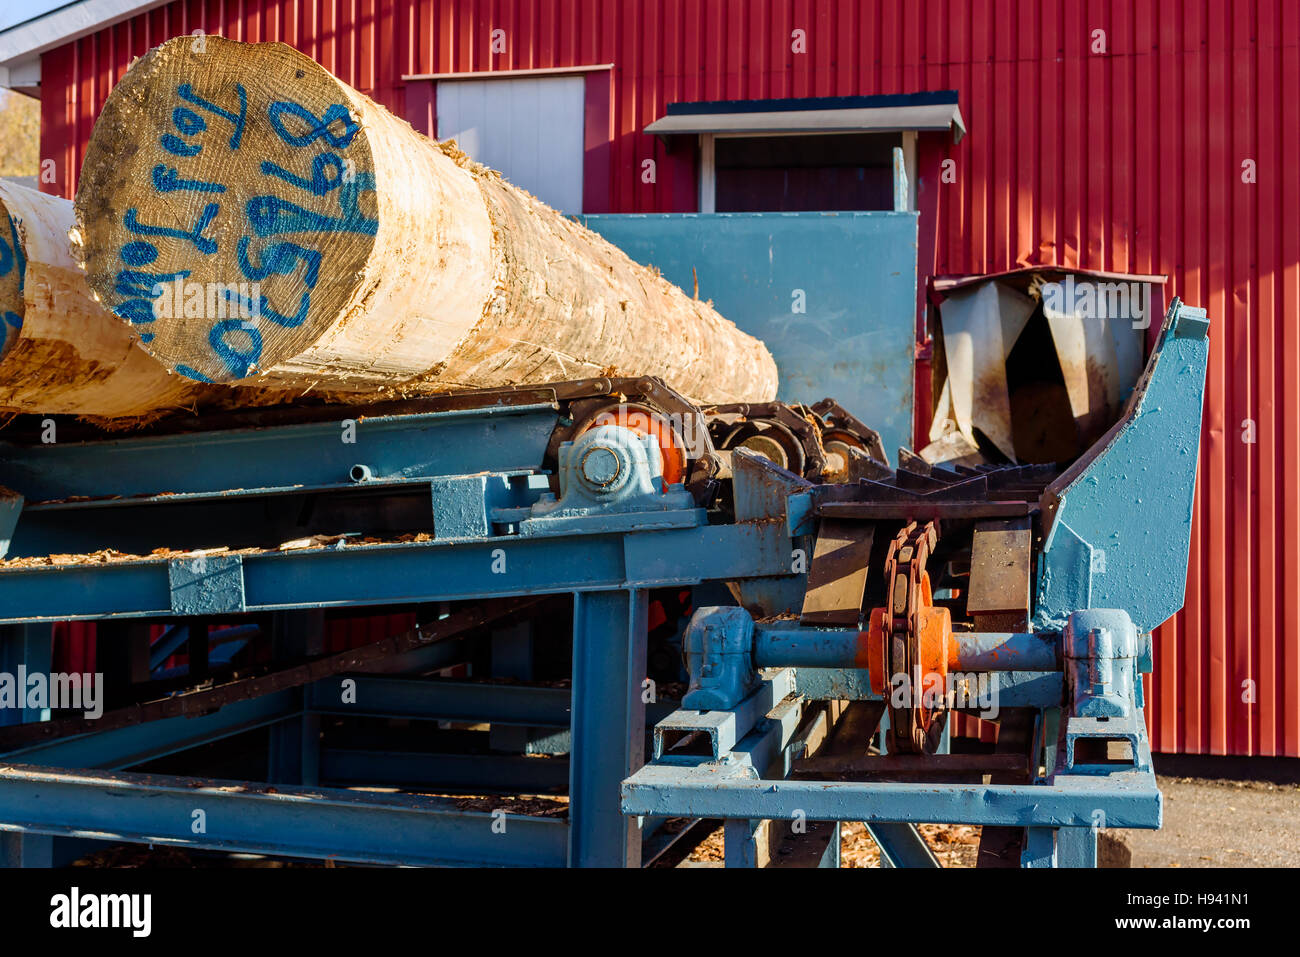 Brakne Hoby, Schweden - 29. Oktober 2016: Dokumentation über den Zugang der Öffentlichkeit Industriegebiet. Futterstelle Holz in einem Sägewerk mit anmeldet Förderband. Stockfoto